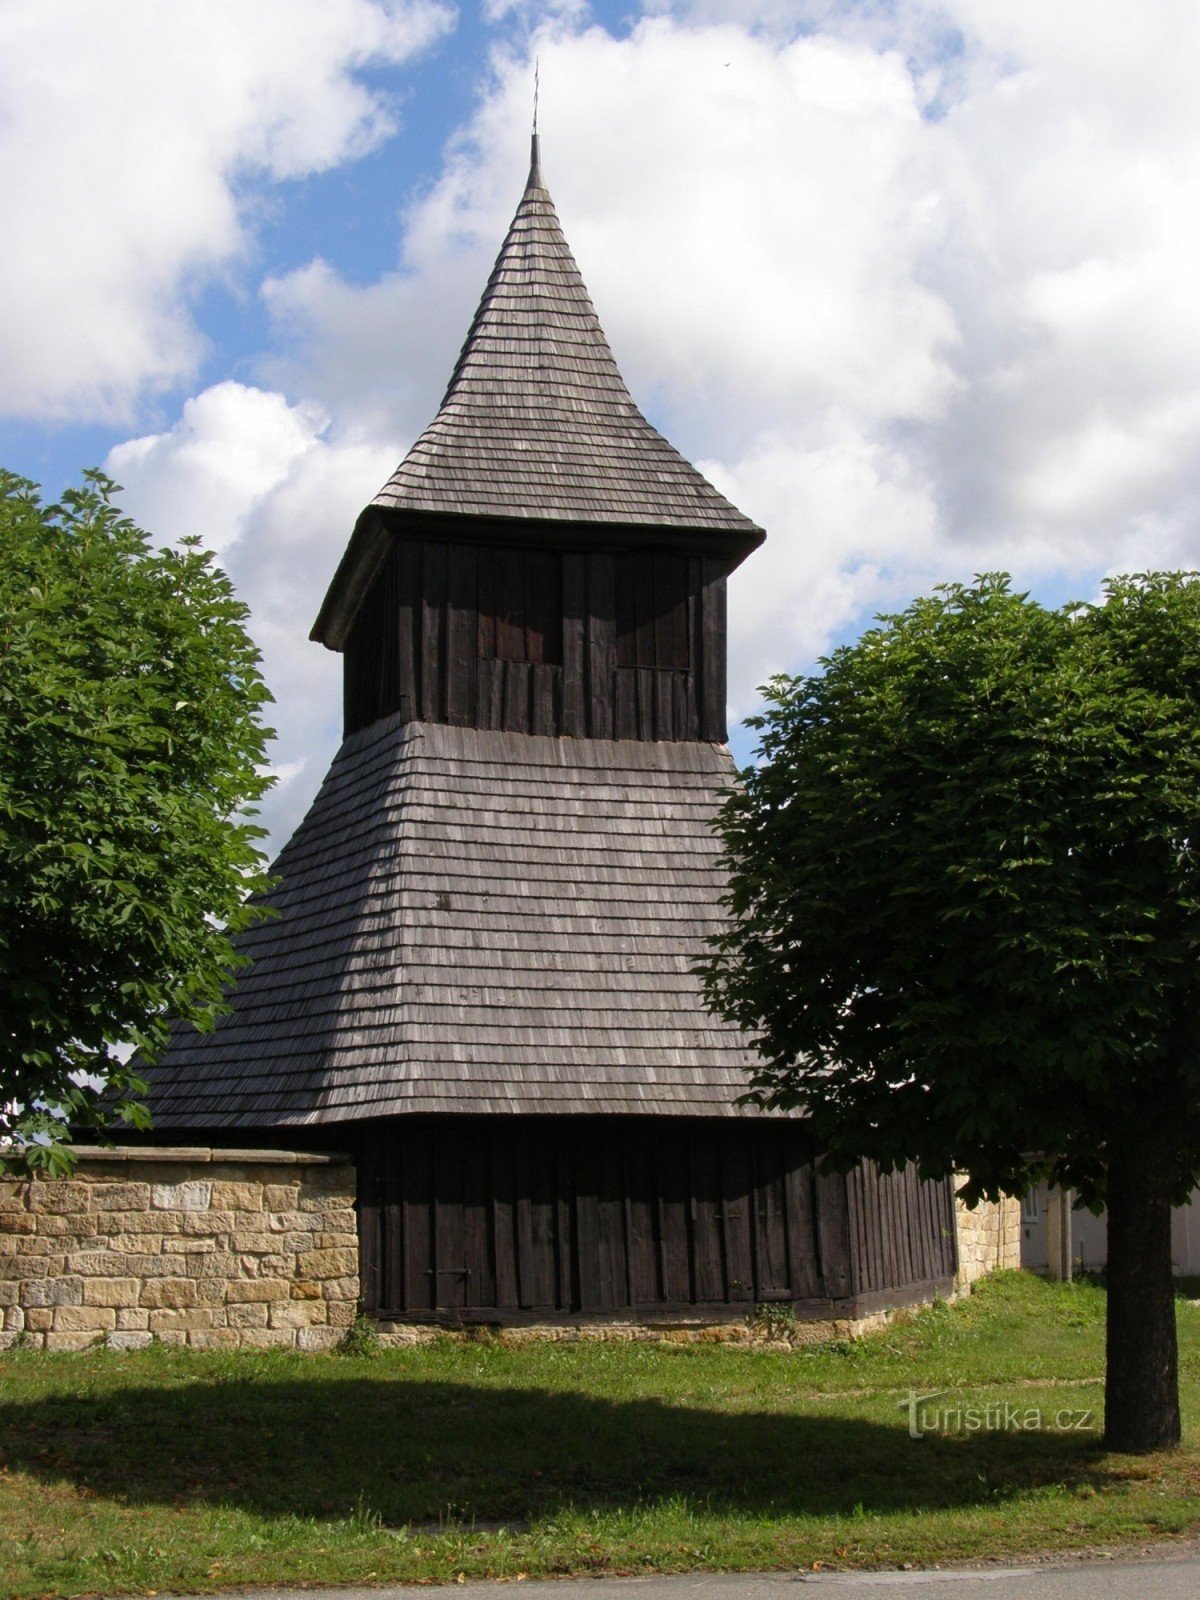 Vysočany - houten kerk van St. Markten met een klokkentoren